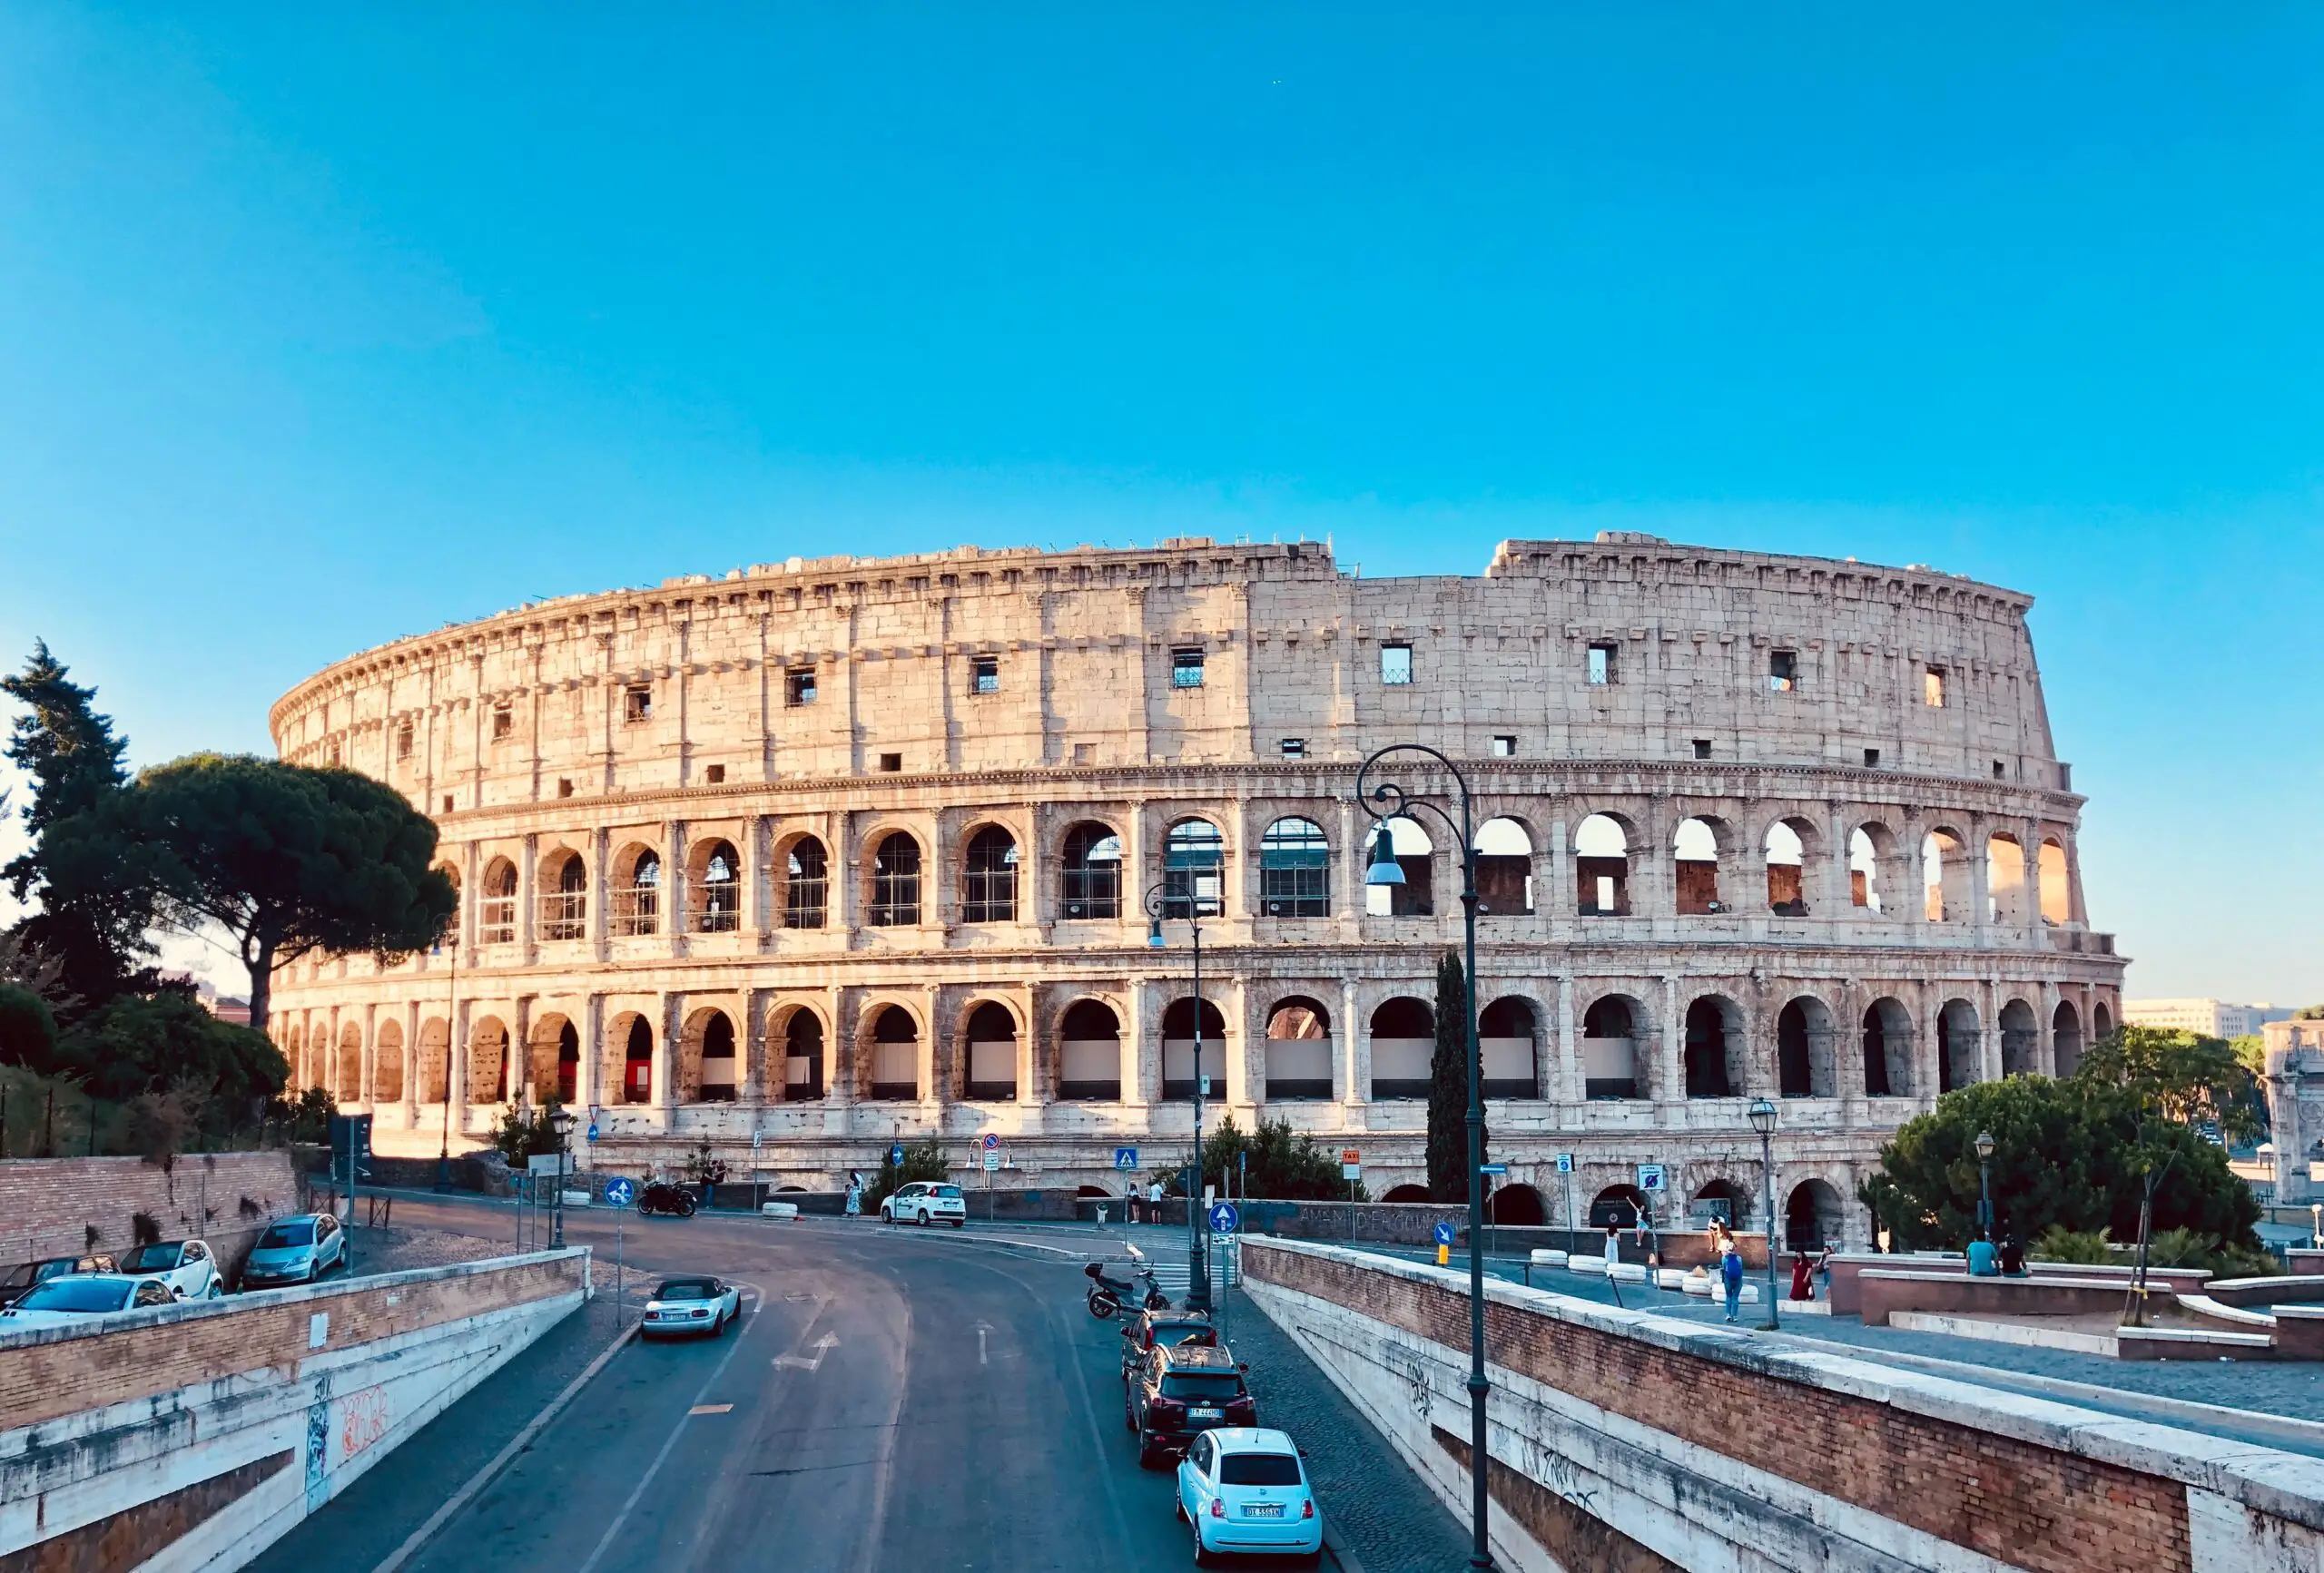 Cómo se construyó el Coliseo: la historia de un monumento fascinante -Revista Interesante